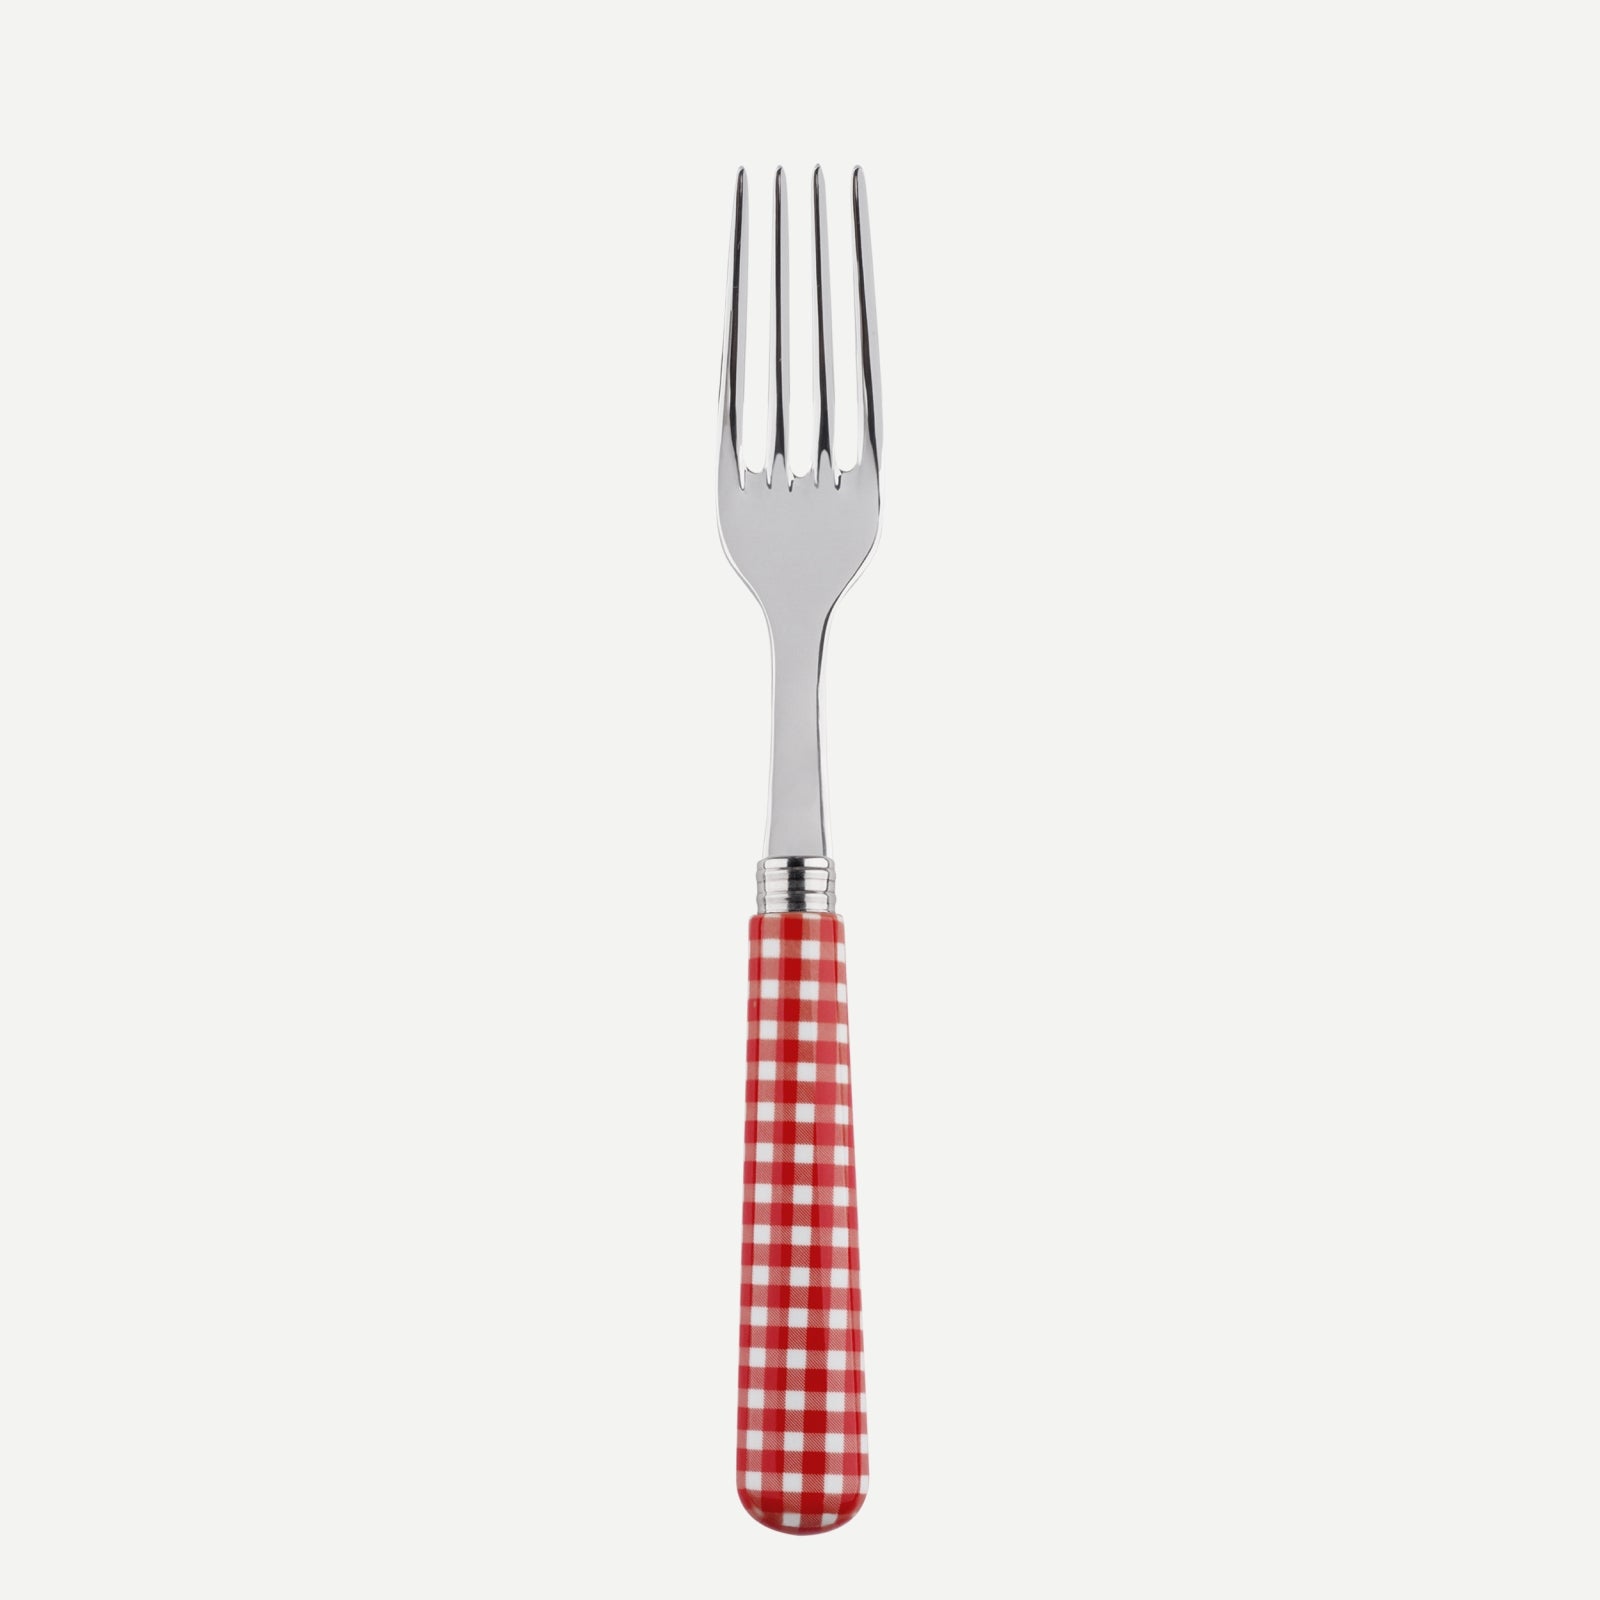 Dinner fork - Gingham - Red